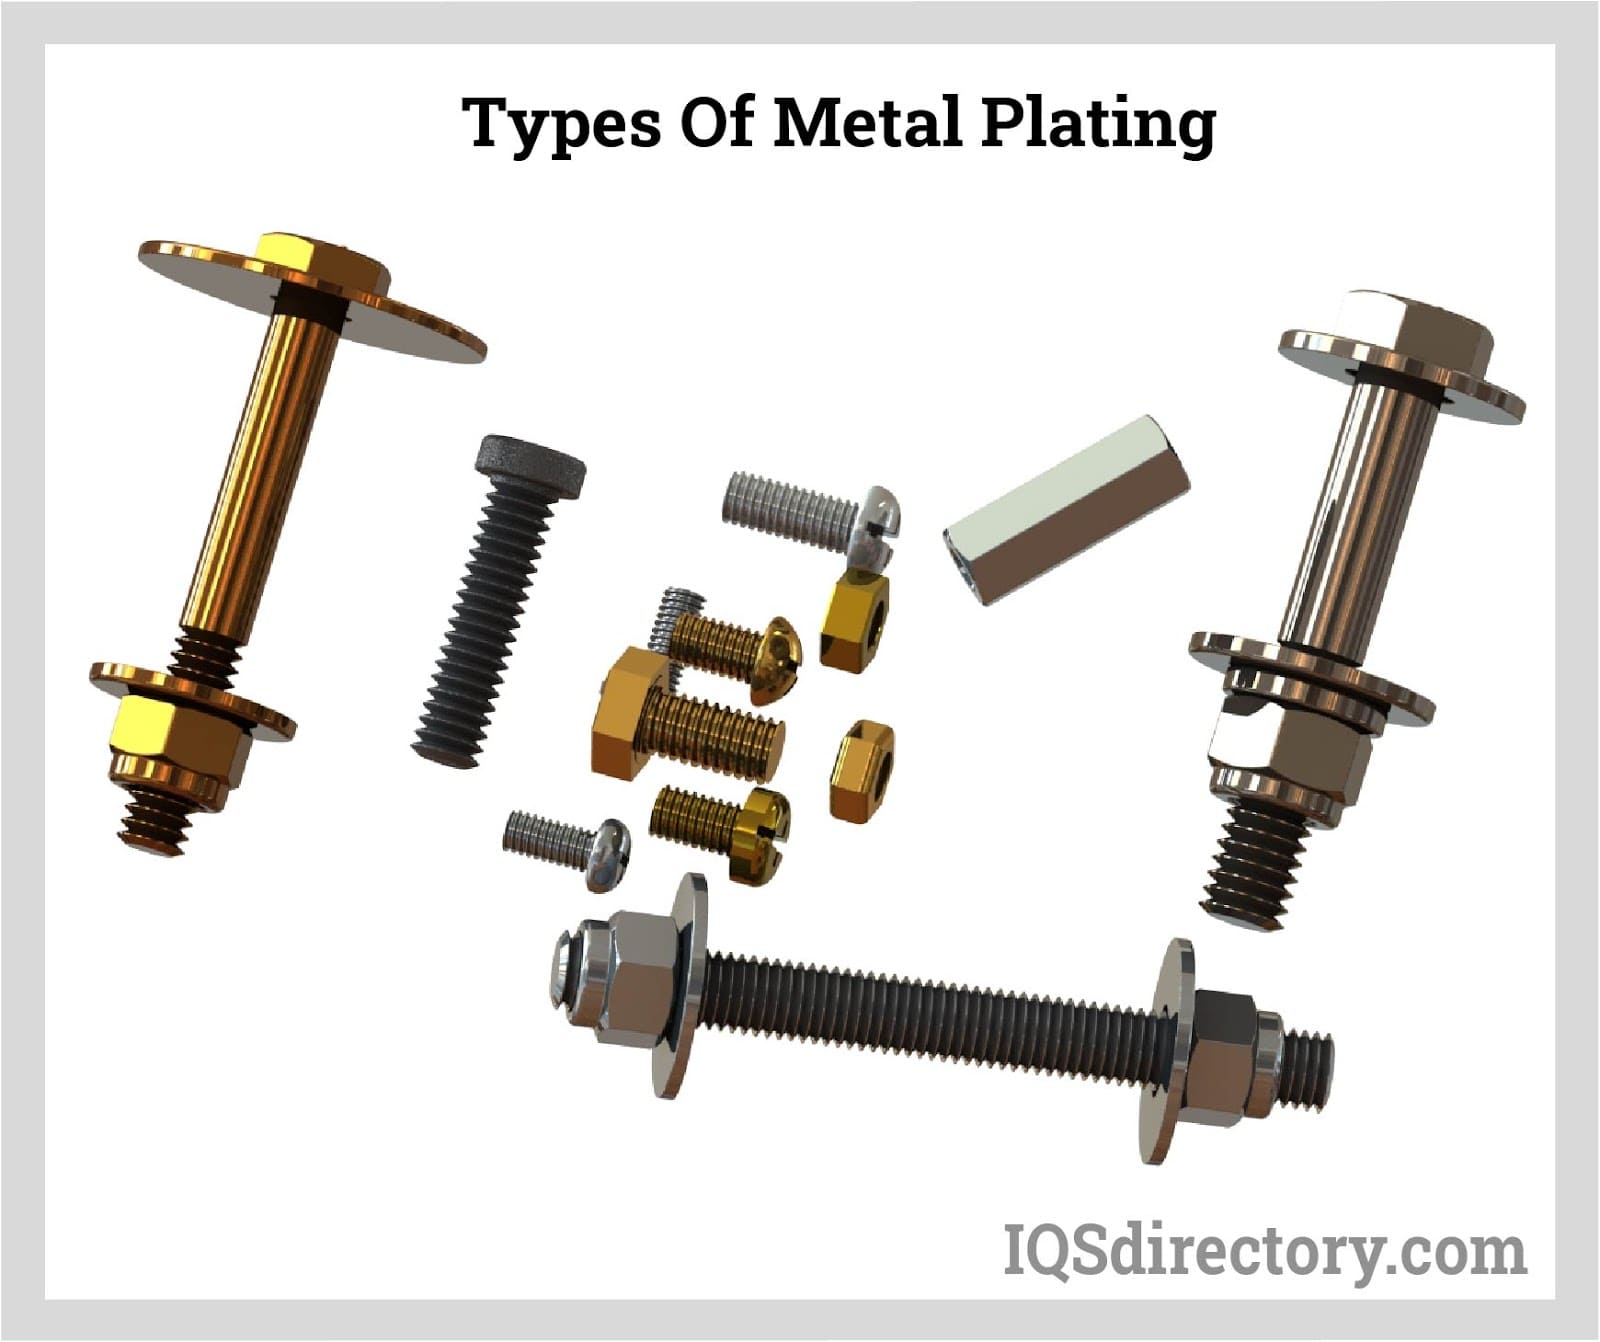 Types of Metal Plating